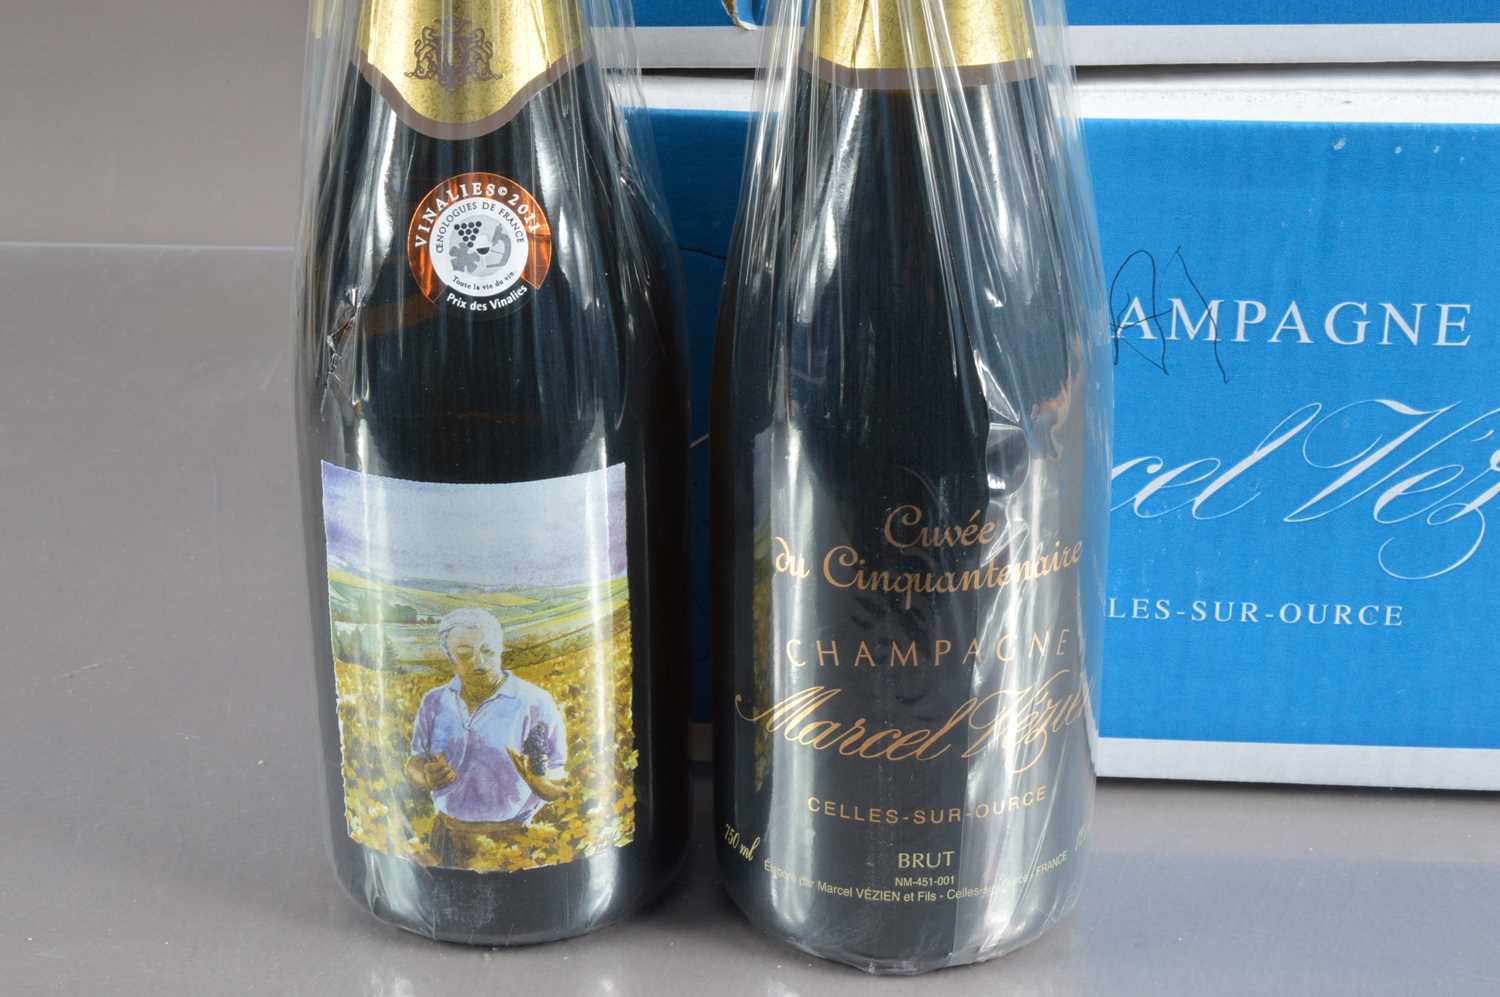 Twelve bottles of Armand Vezien Cuvee du Cinquantenaire Champagne, - Image 2 of 2